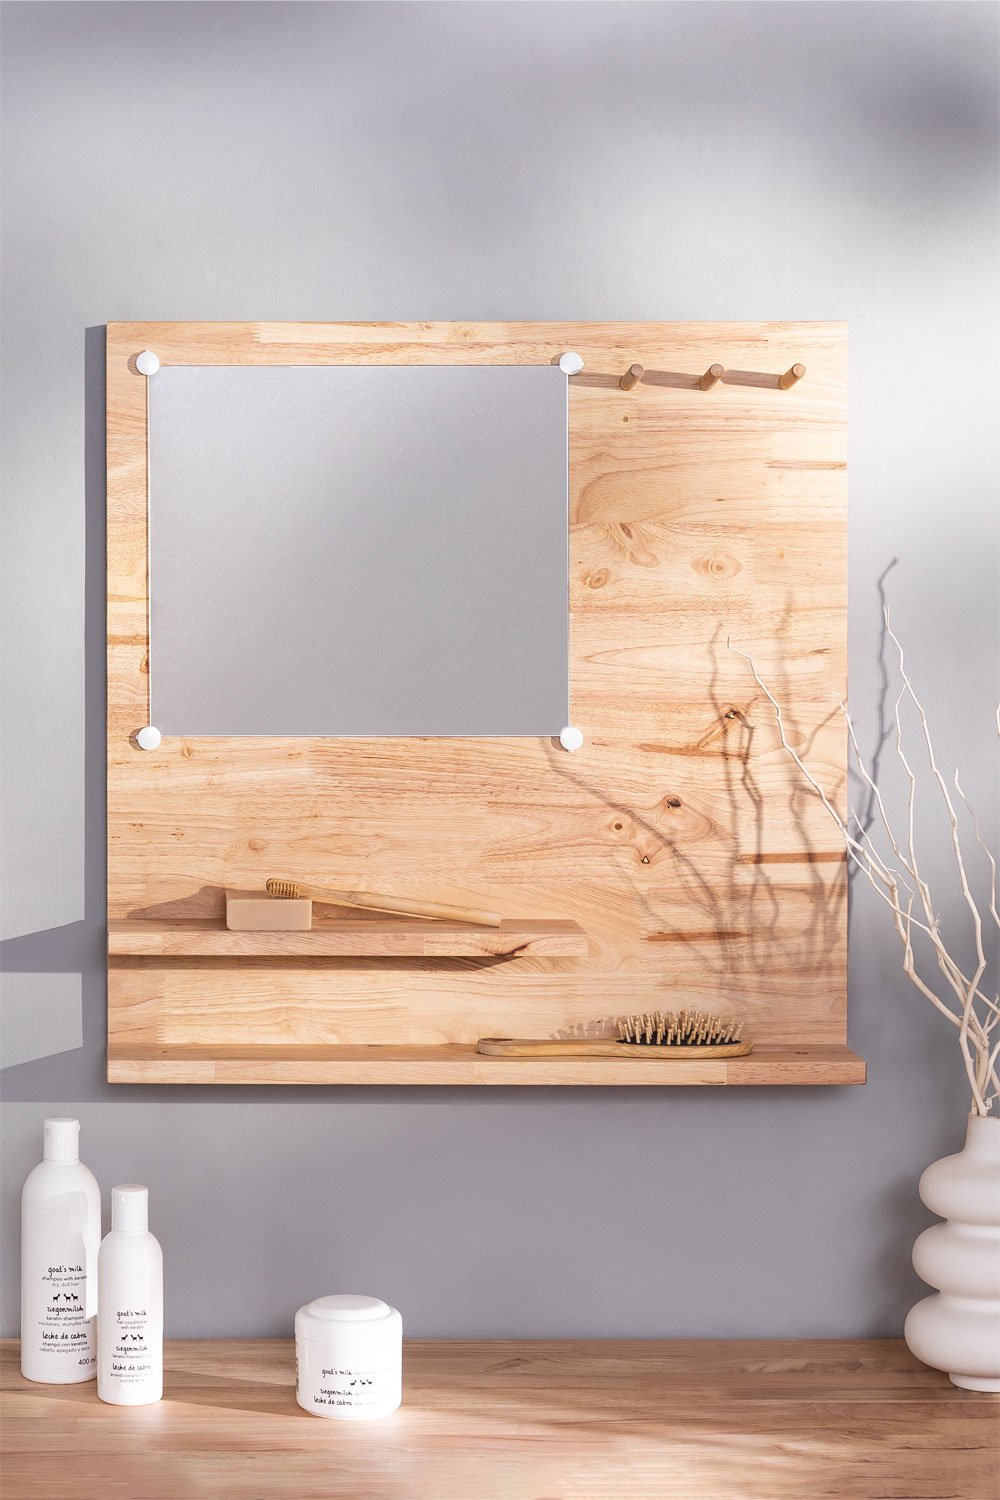 Houten plank met spiegel (60x60 cm) Arlan, galerij beeld 1